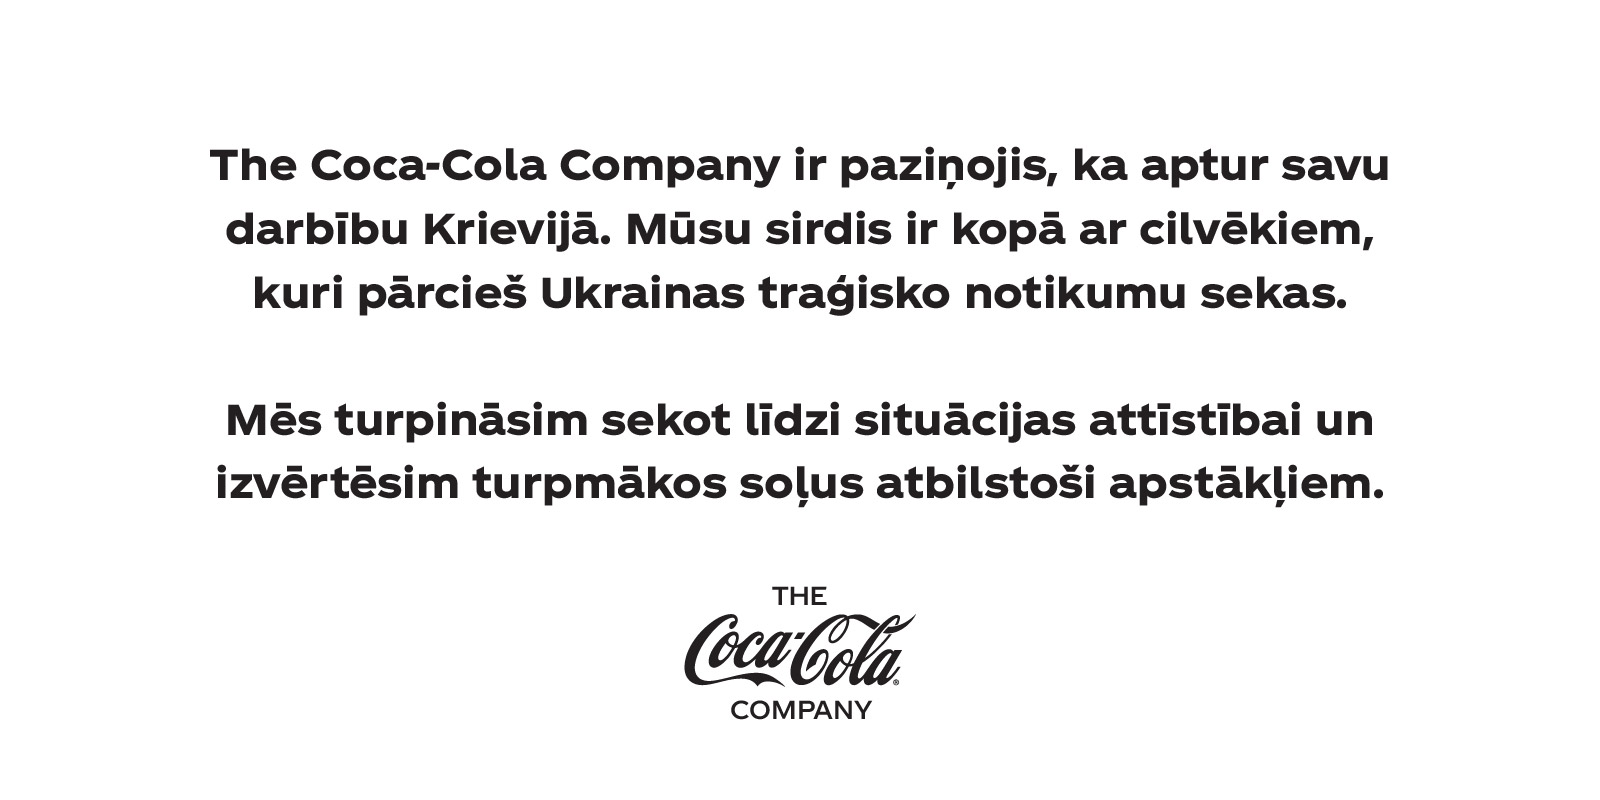 the coca-cola company aptur savu darbību krievijā